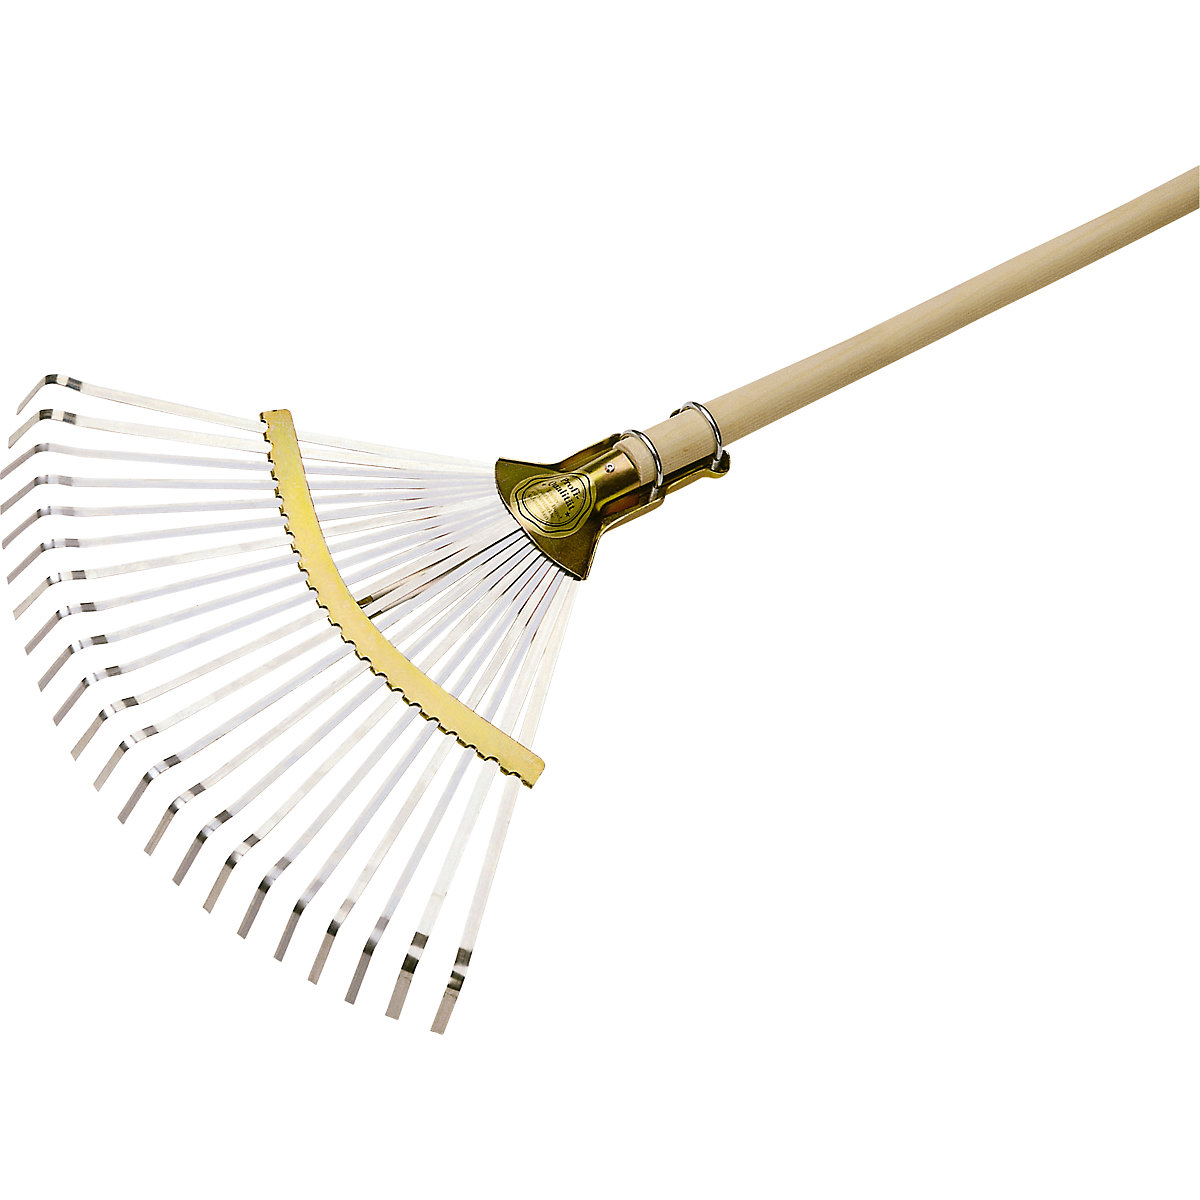 Professional leaf rake - FLORA